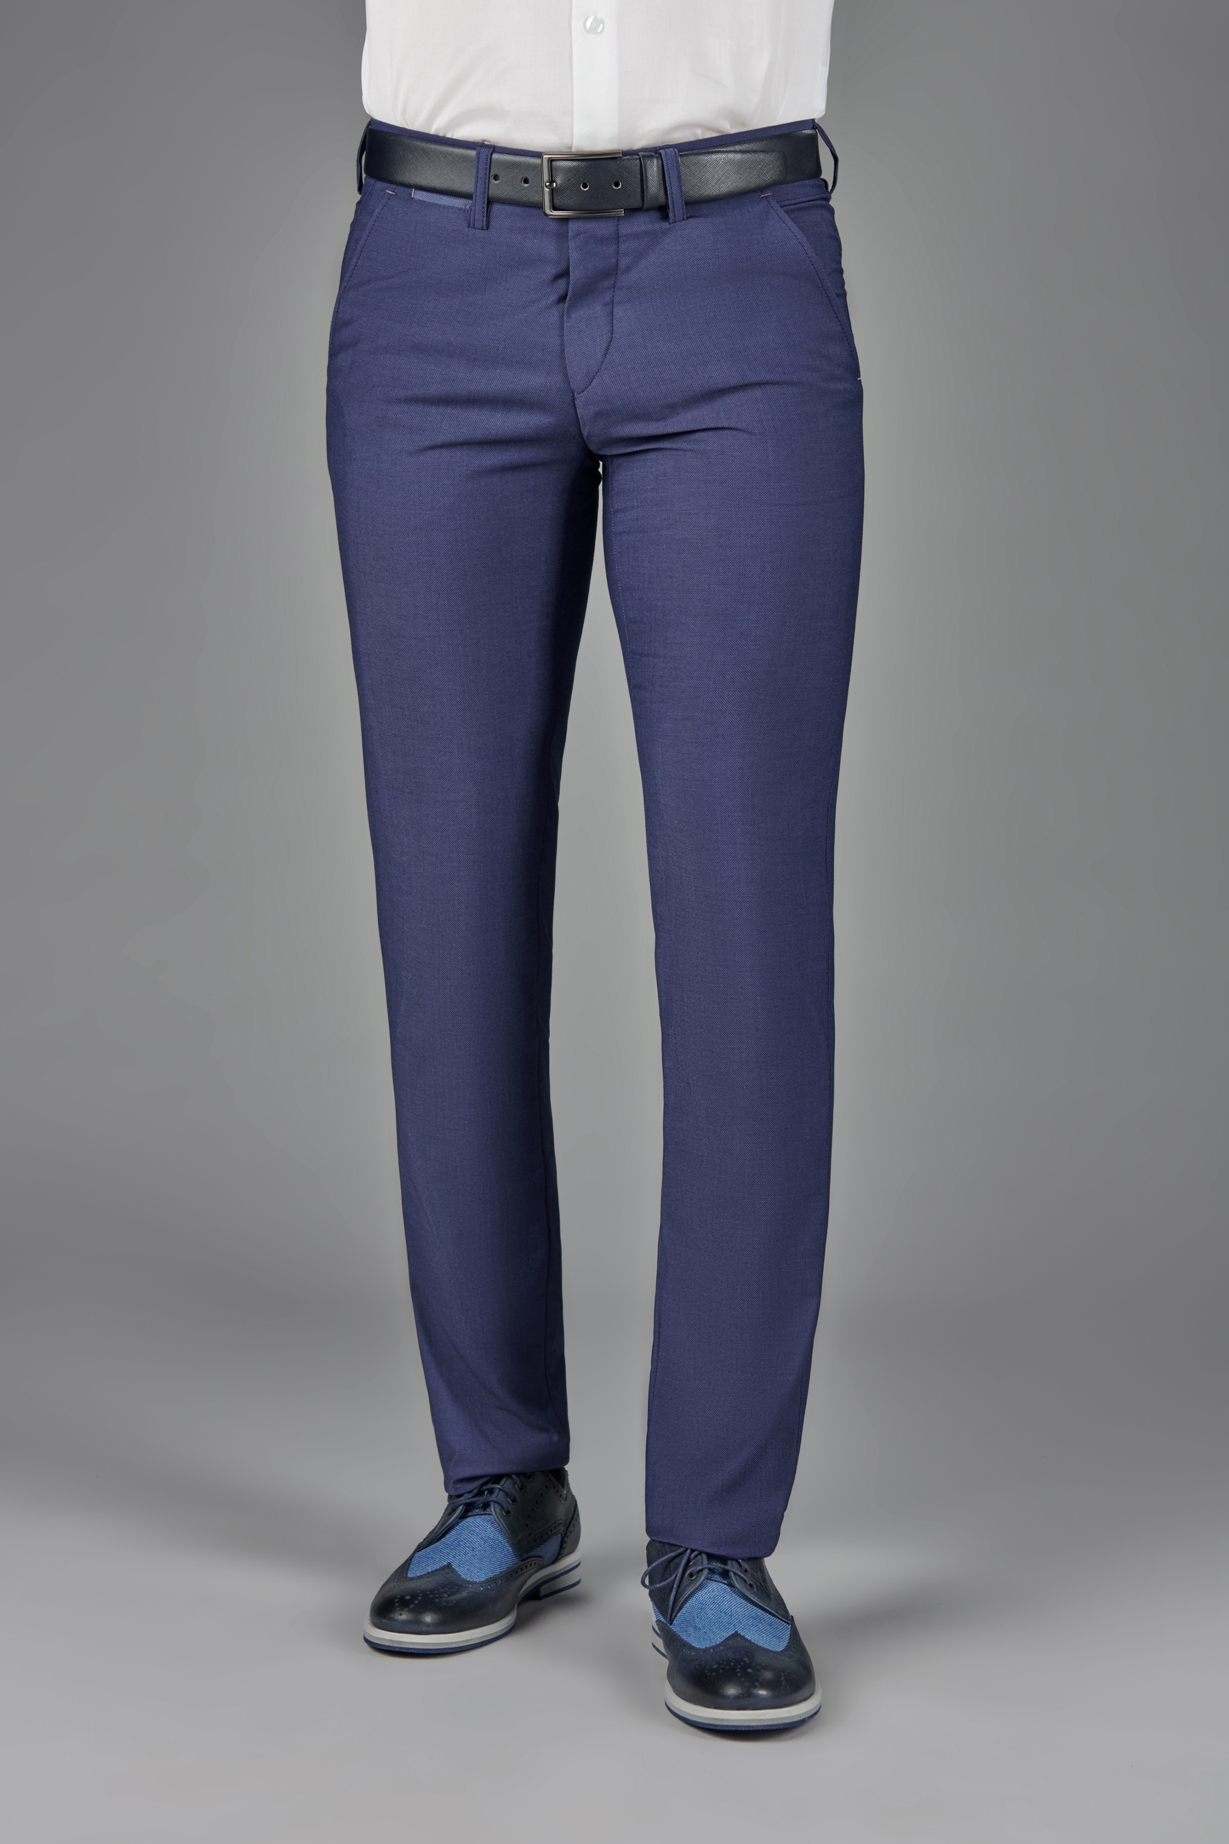 Синие брюки в стиле casual Super Slim Fit 